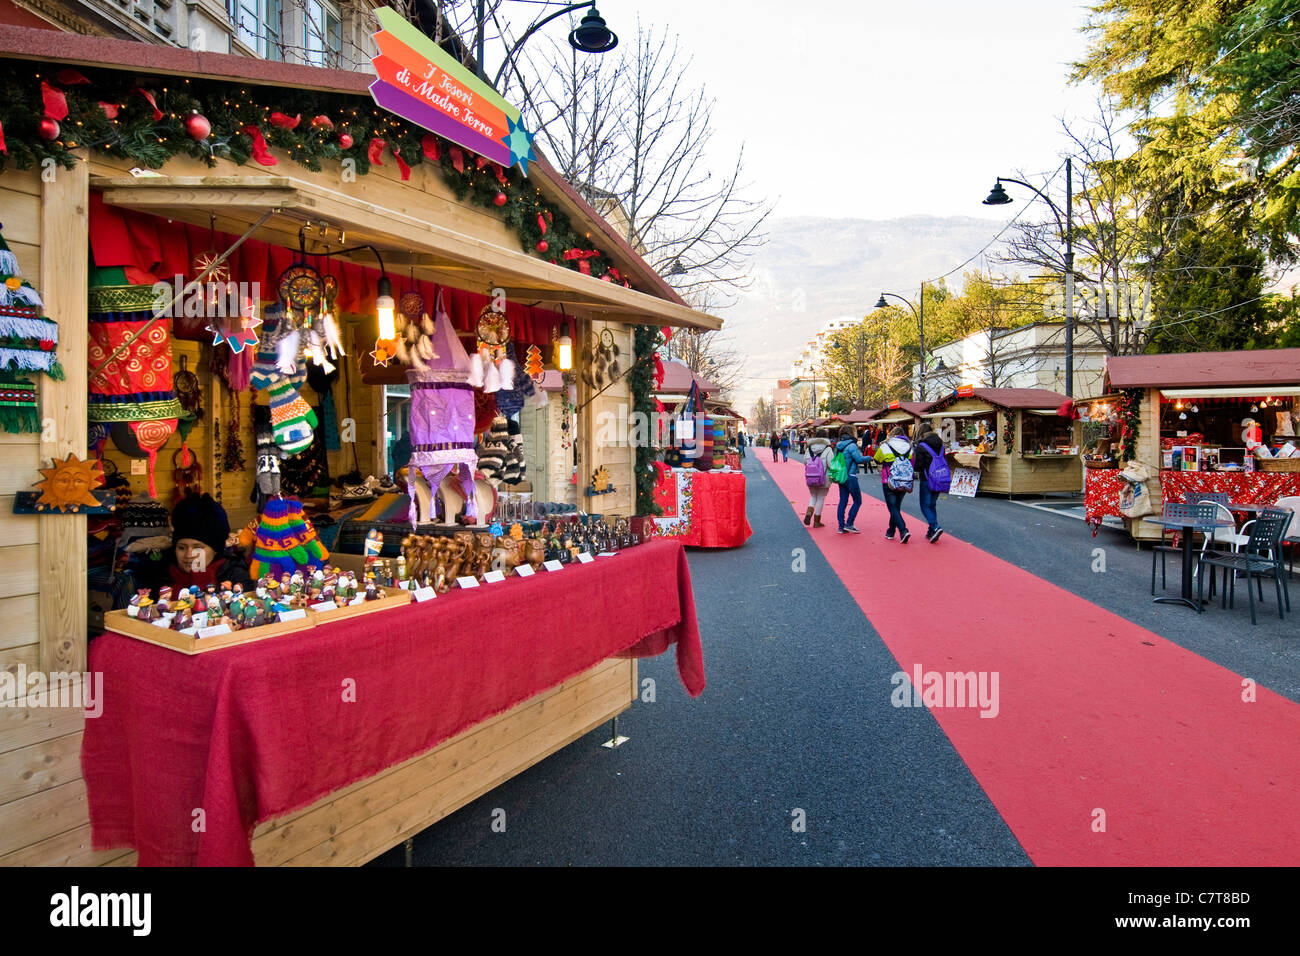 Italia, Trentino Alto Adige, Trento, el mercado de Navidad Foto de stock